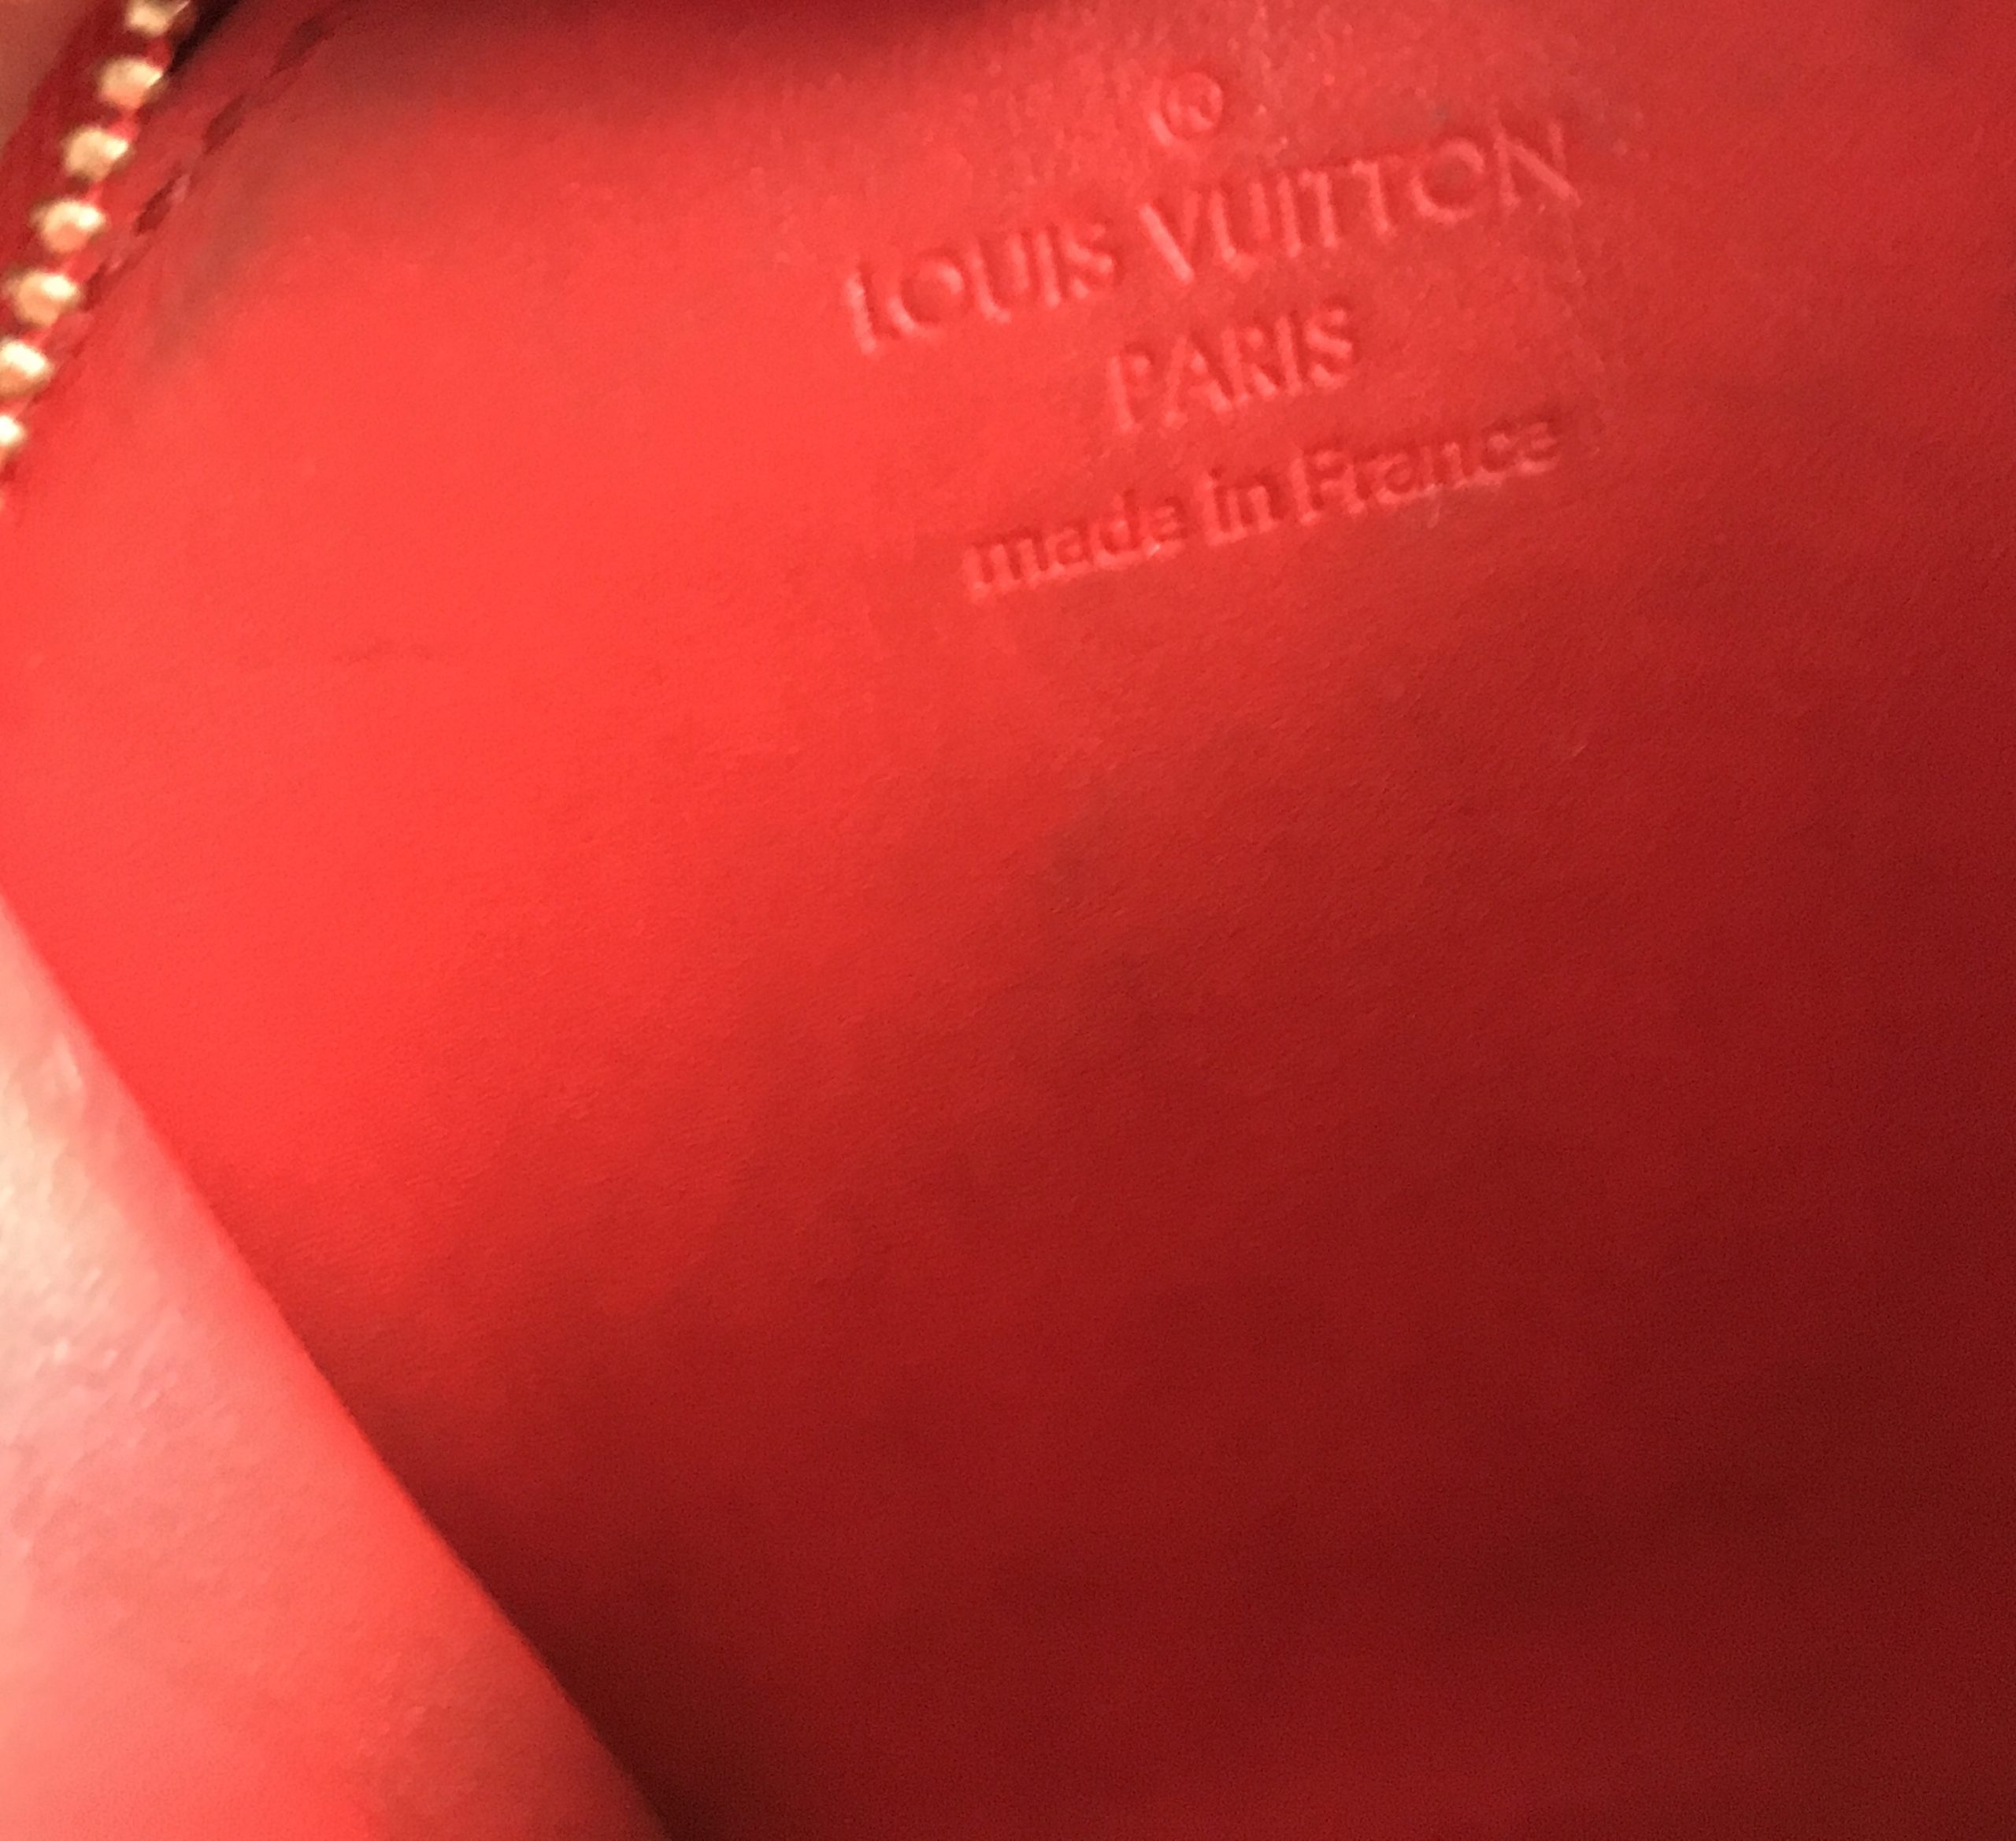 Stephen Sprouse x Louis Vuitton Rouge Fauviste Corail Monogram Vernis  Leopard Zippy Coin Purse QJA09S3TUB010